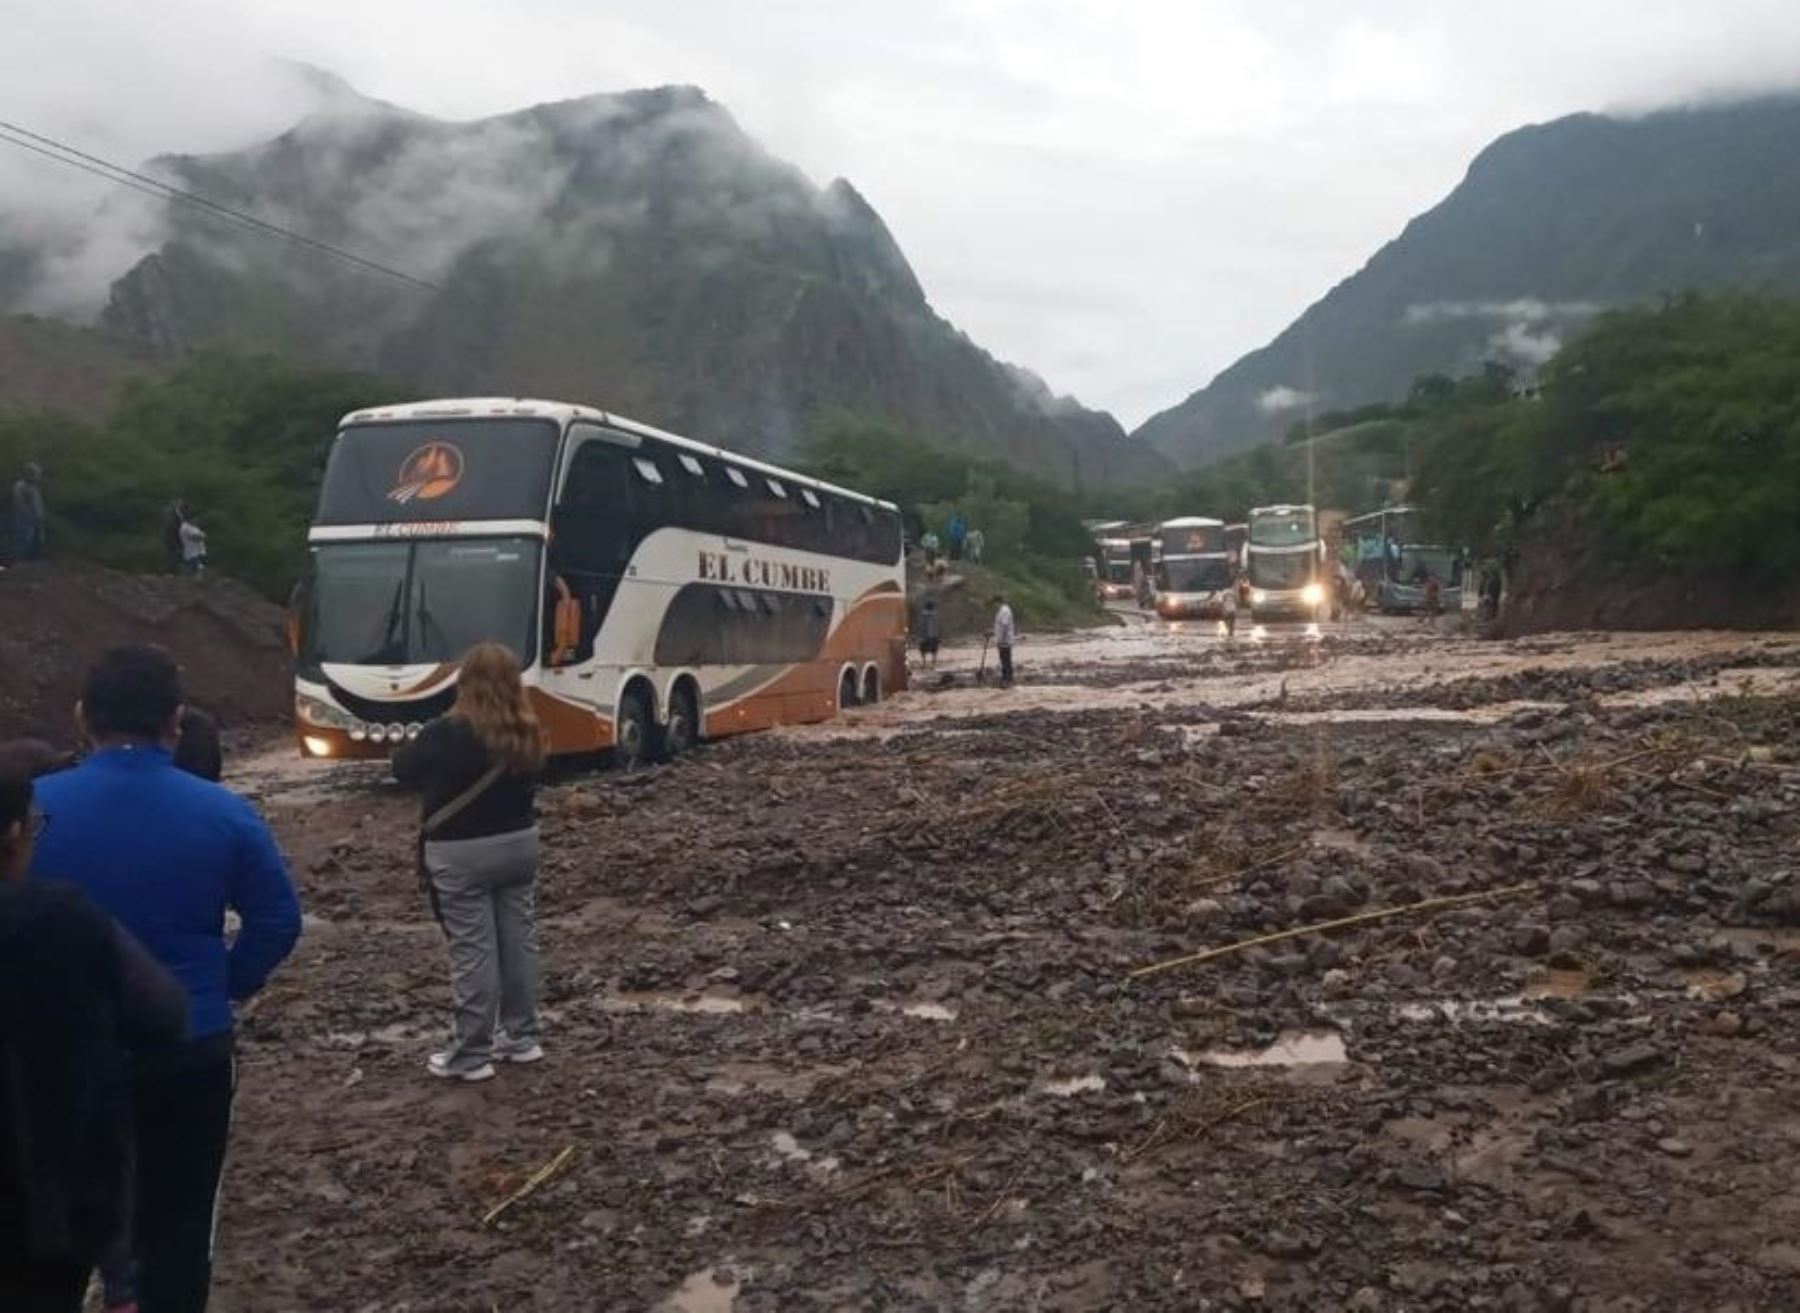 Las lluvias intensas causaron afectaciones en diversos tramos viales de la región Cajamarca y ahora cuadrillas de trabajadores buscan restablecer el tránsito. ANDINA/Difusión